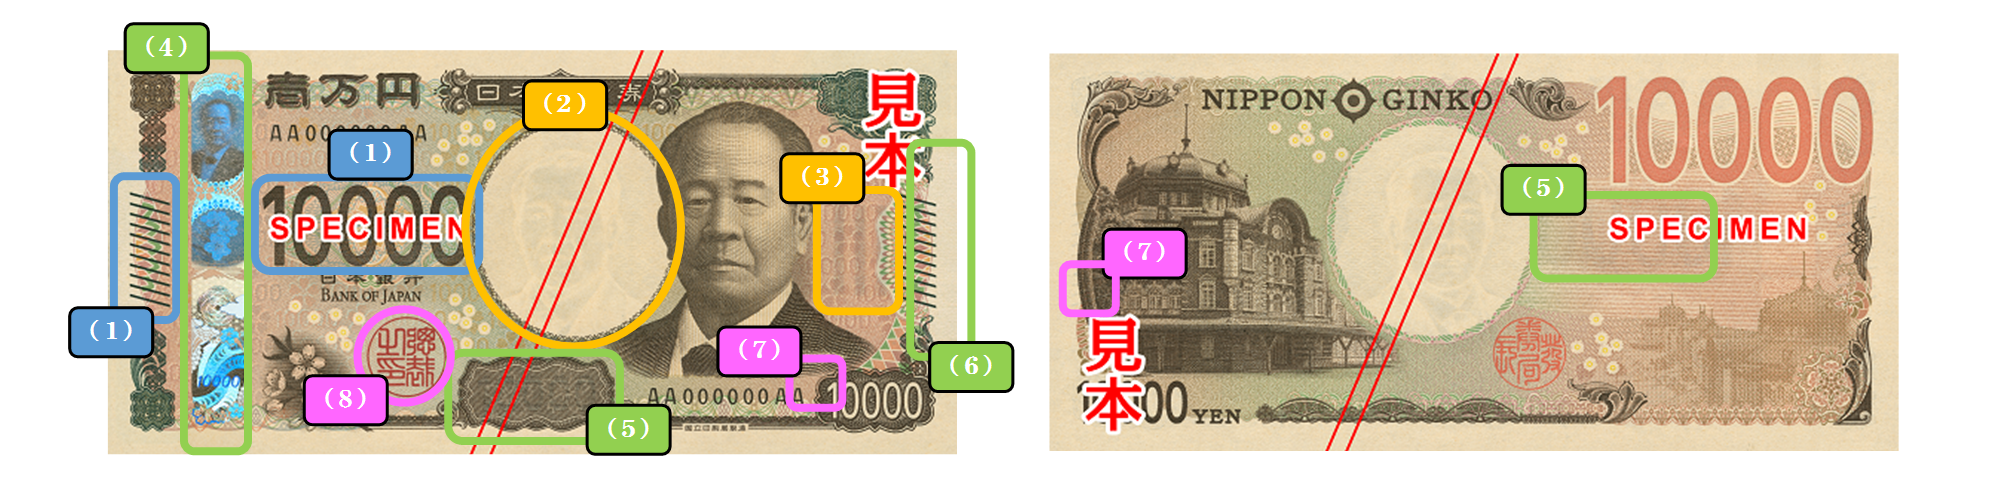 一万円券の表面・裏面の画像。